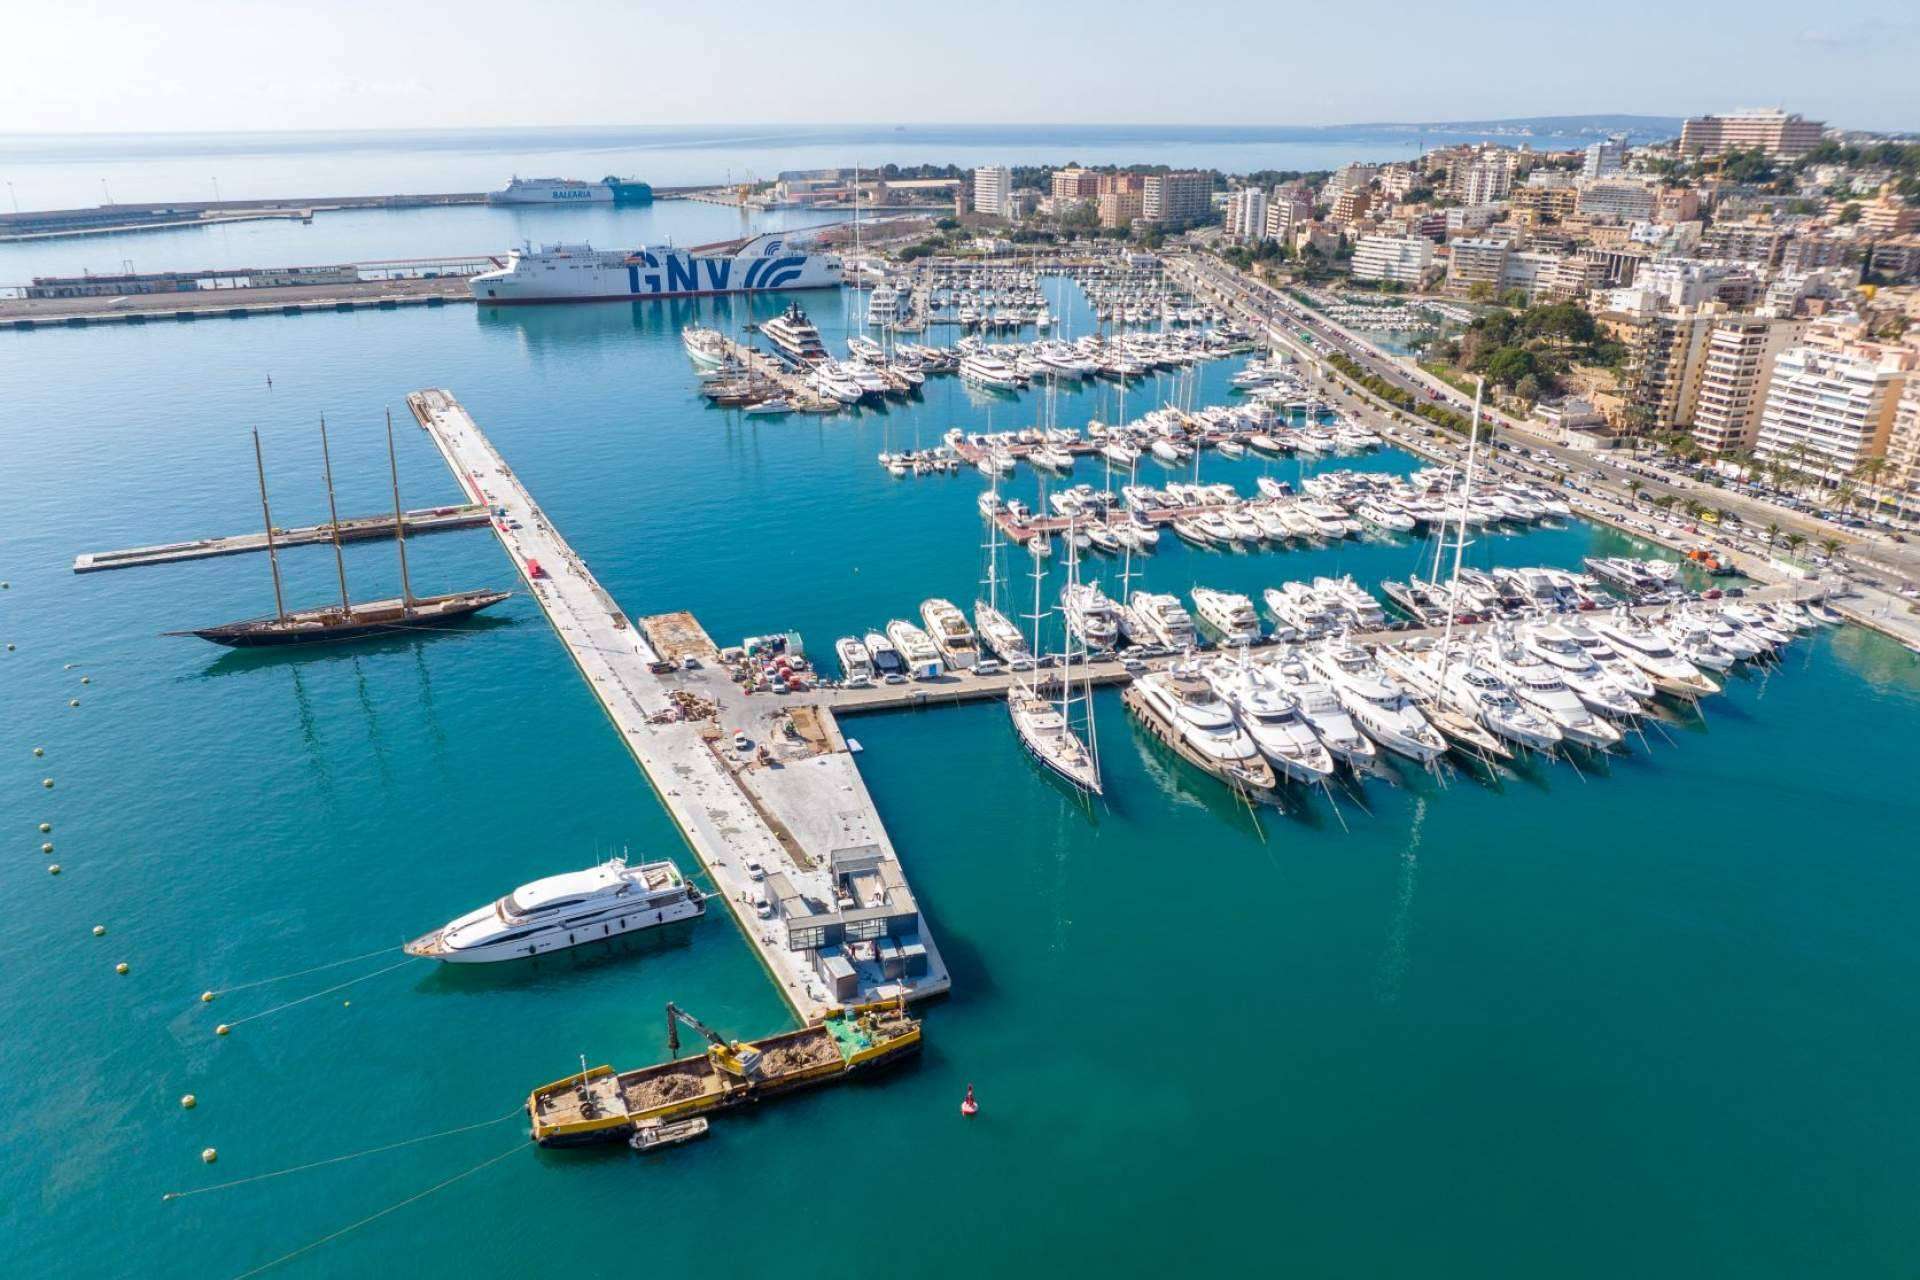 El puerto deportivo Club de Mar Mallorca incorporará el saneamiento por vacío de Flovac